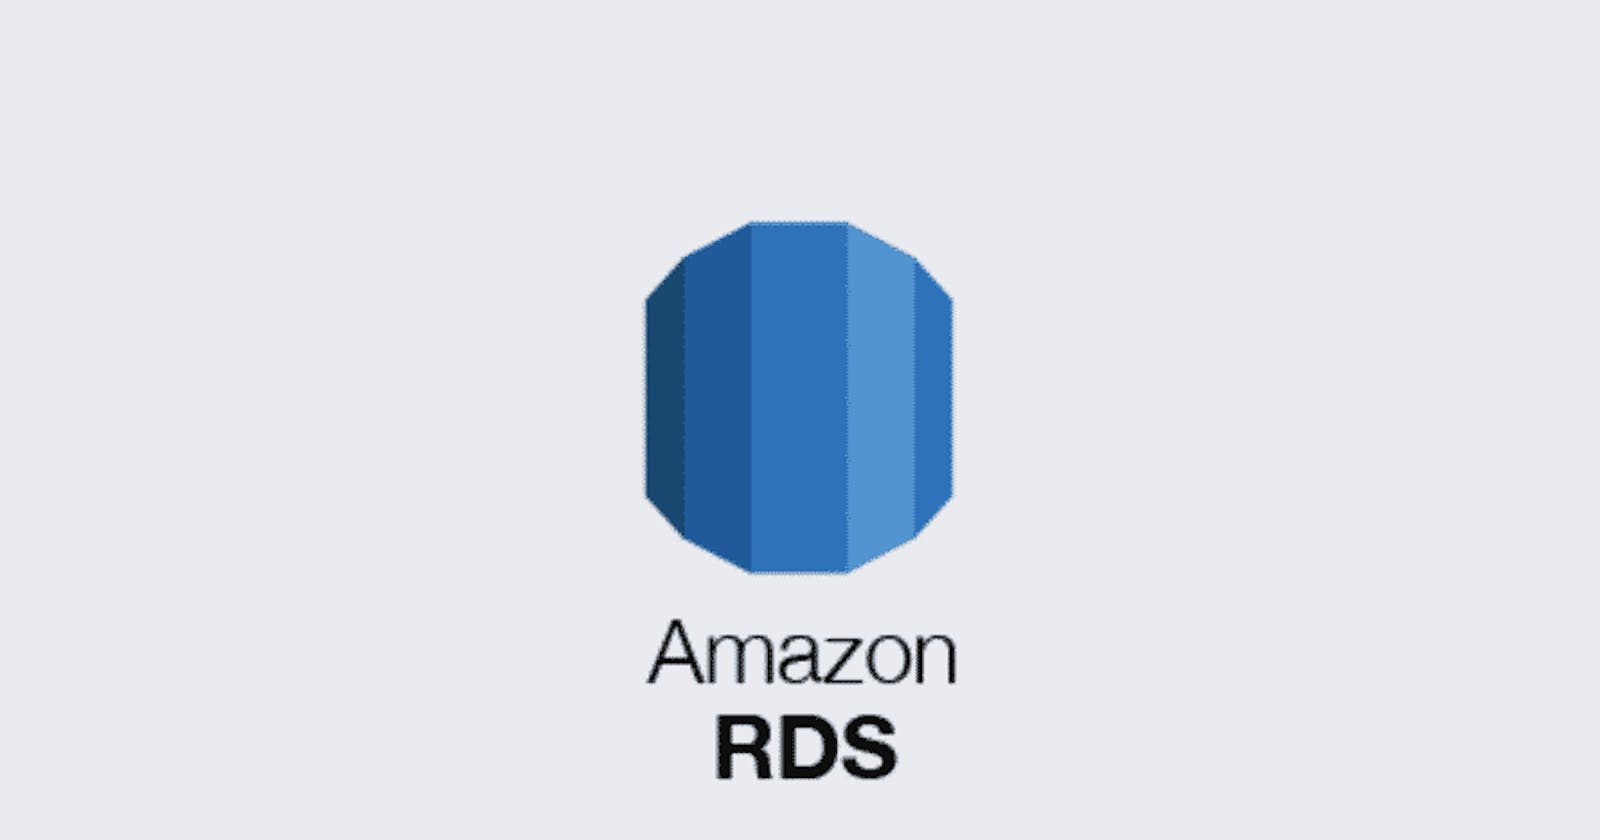 Amazon RDS - Relational Database Service